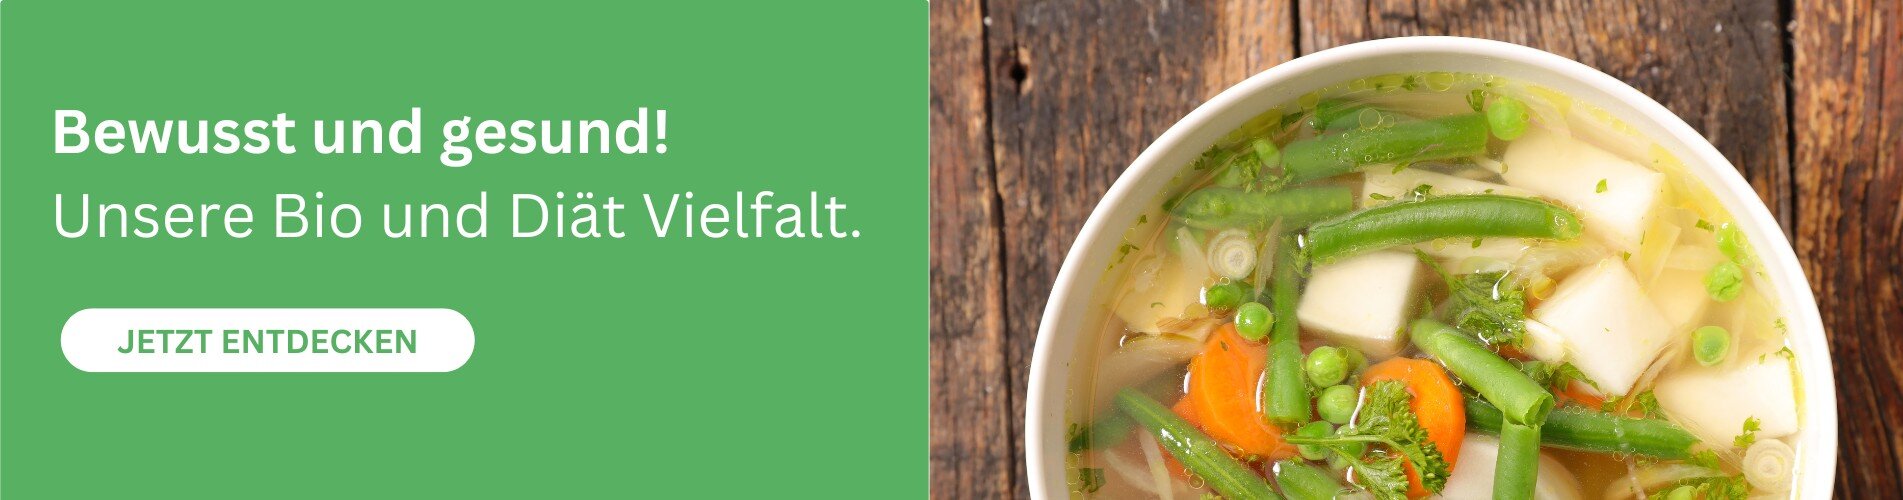 Bio- und Diät-Produkte von Wela Trognitz direkt im Suppen-Shop kaufen